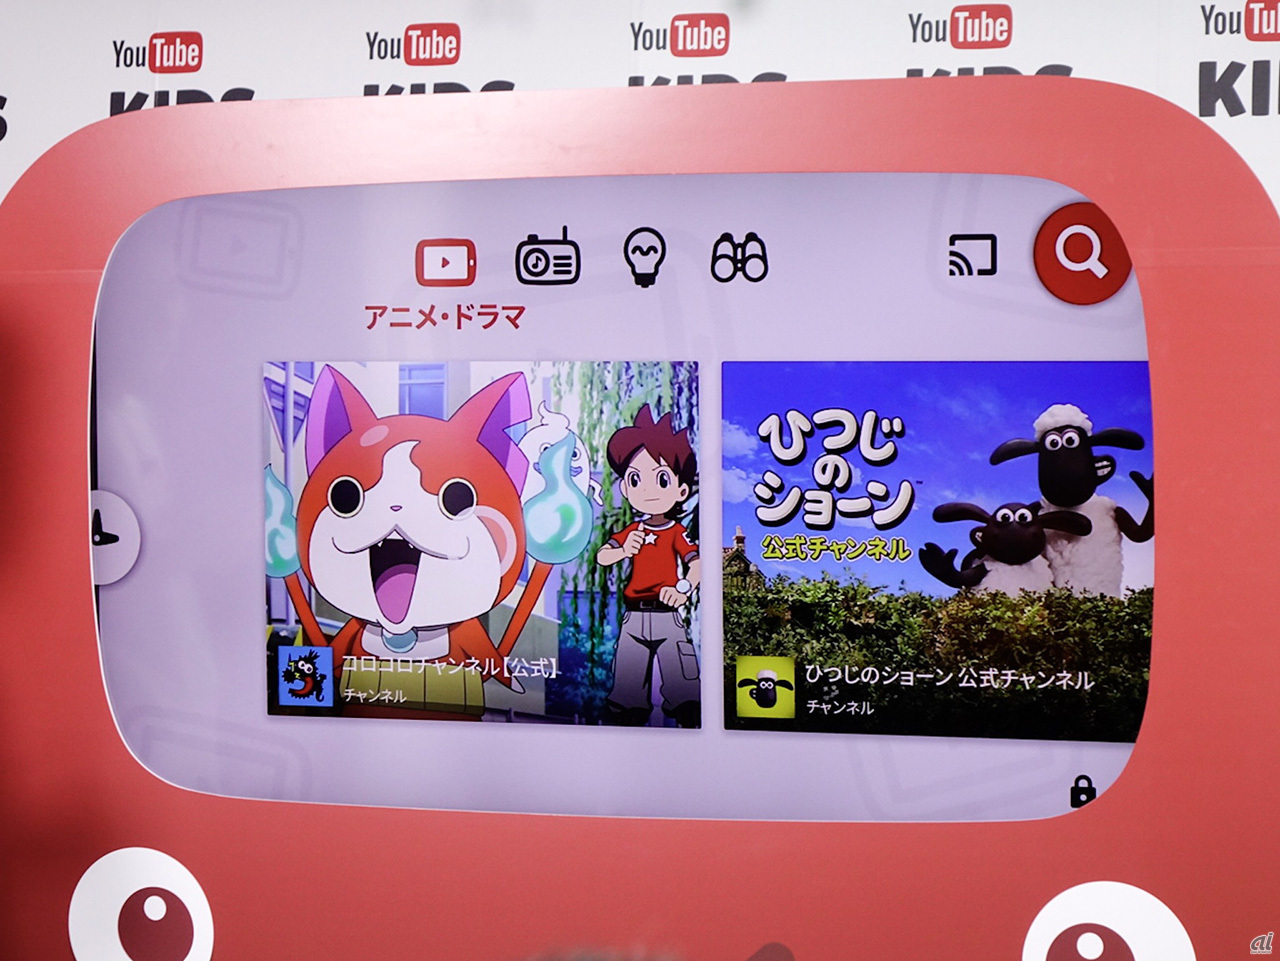 子ども向け Youtube 日本でも提供開始 アニメから知育動画まで幅広くカバー Cnet Japan